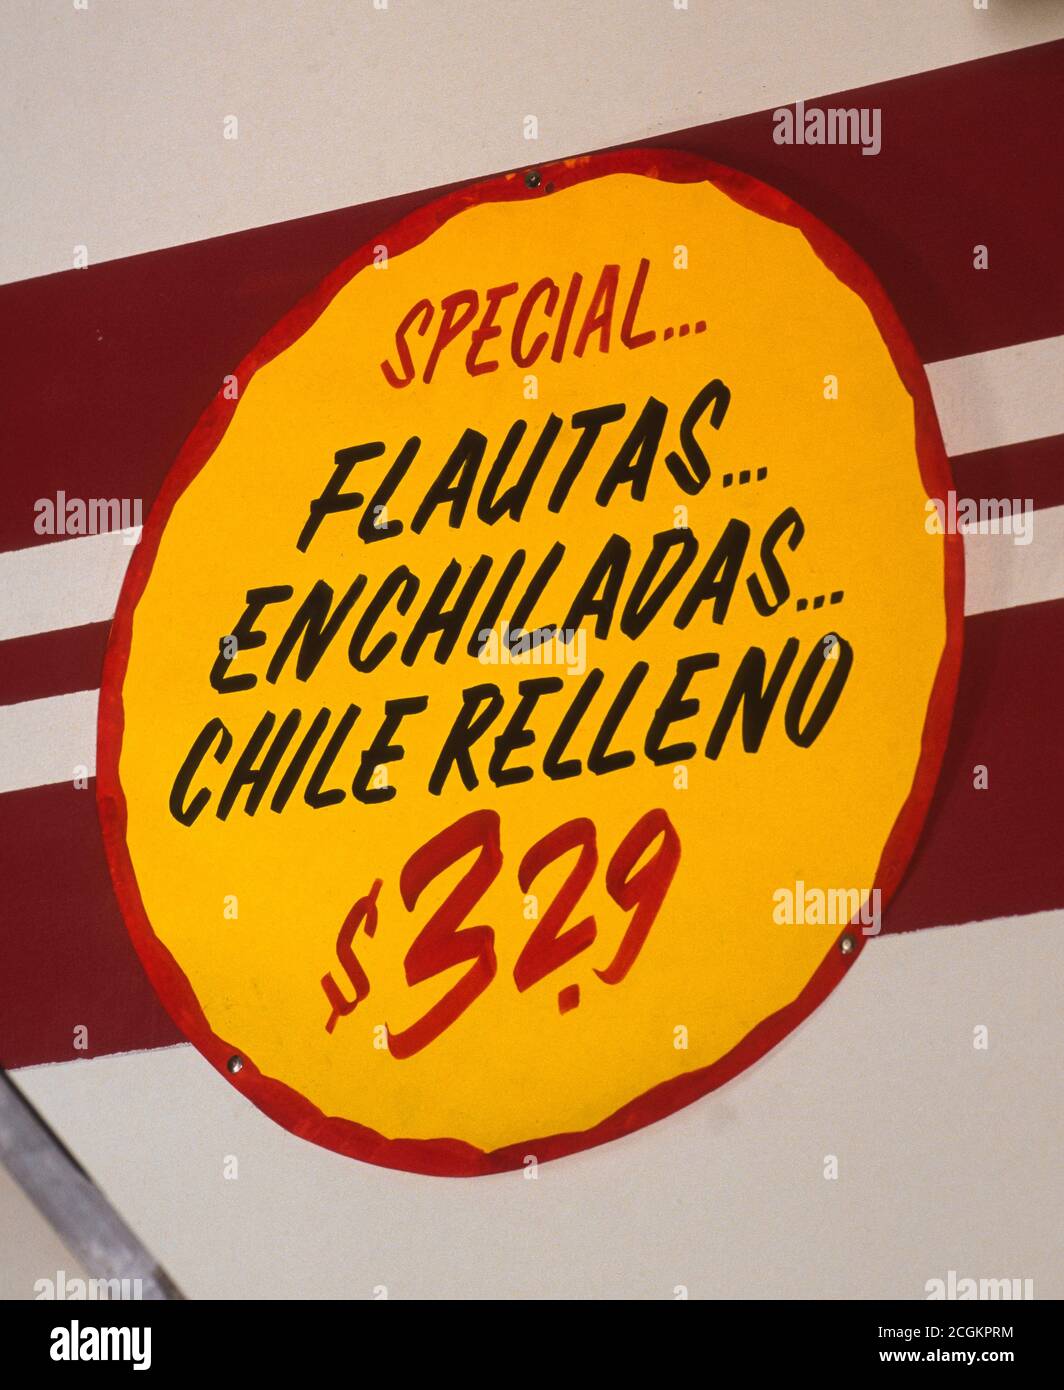 EL Paso, TEXAS: Mexikanisches Restaurant mit Speisezeichen für Gautas, Enchiladas und chile relleno. Stockfoto